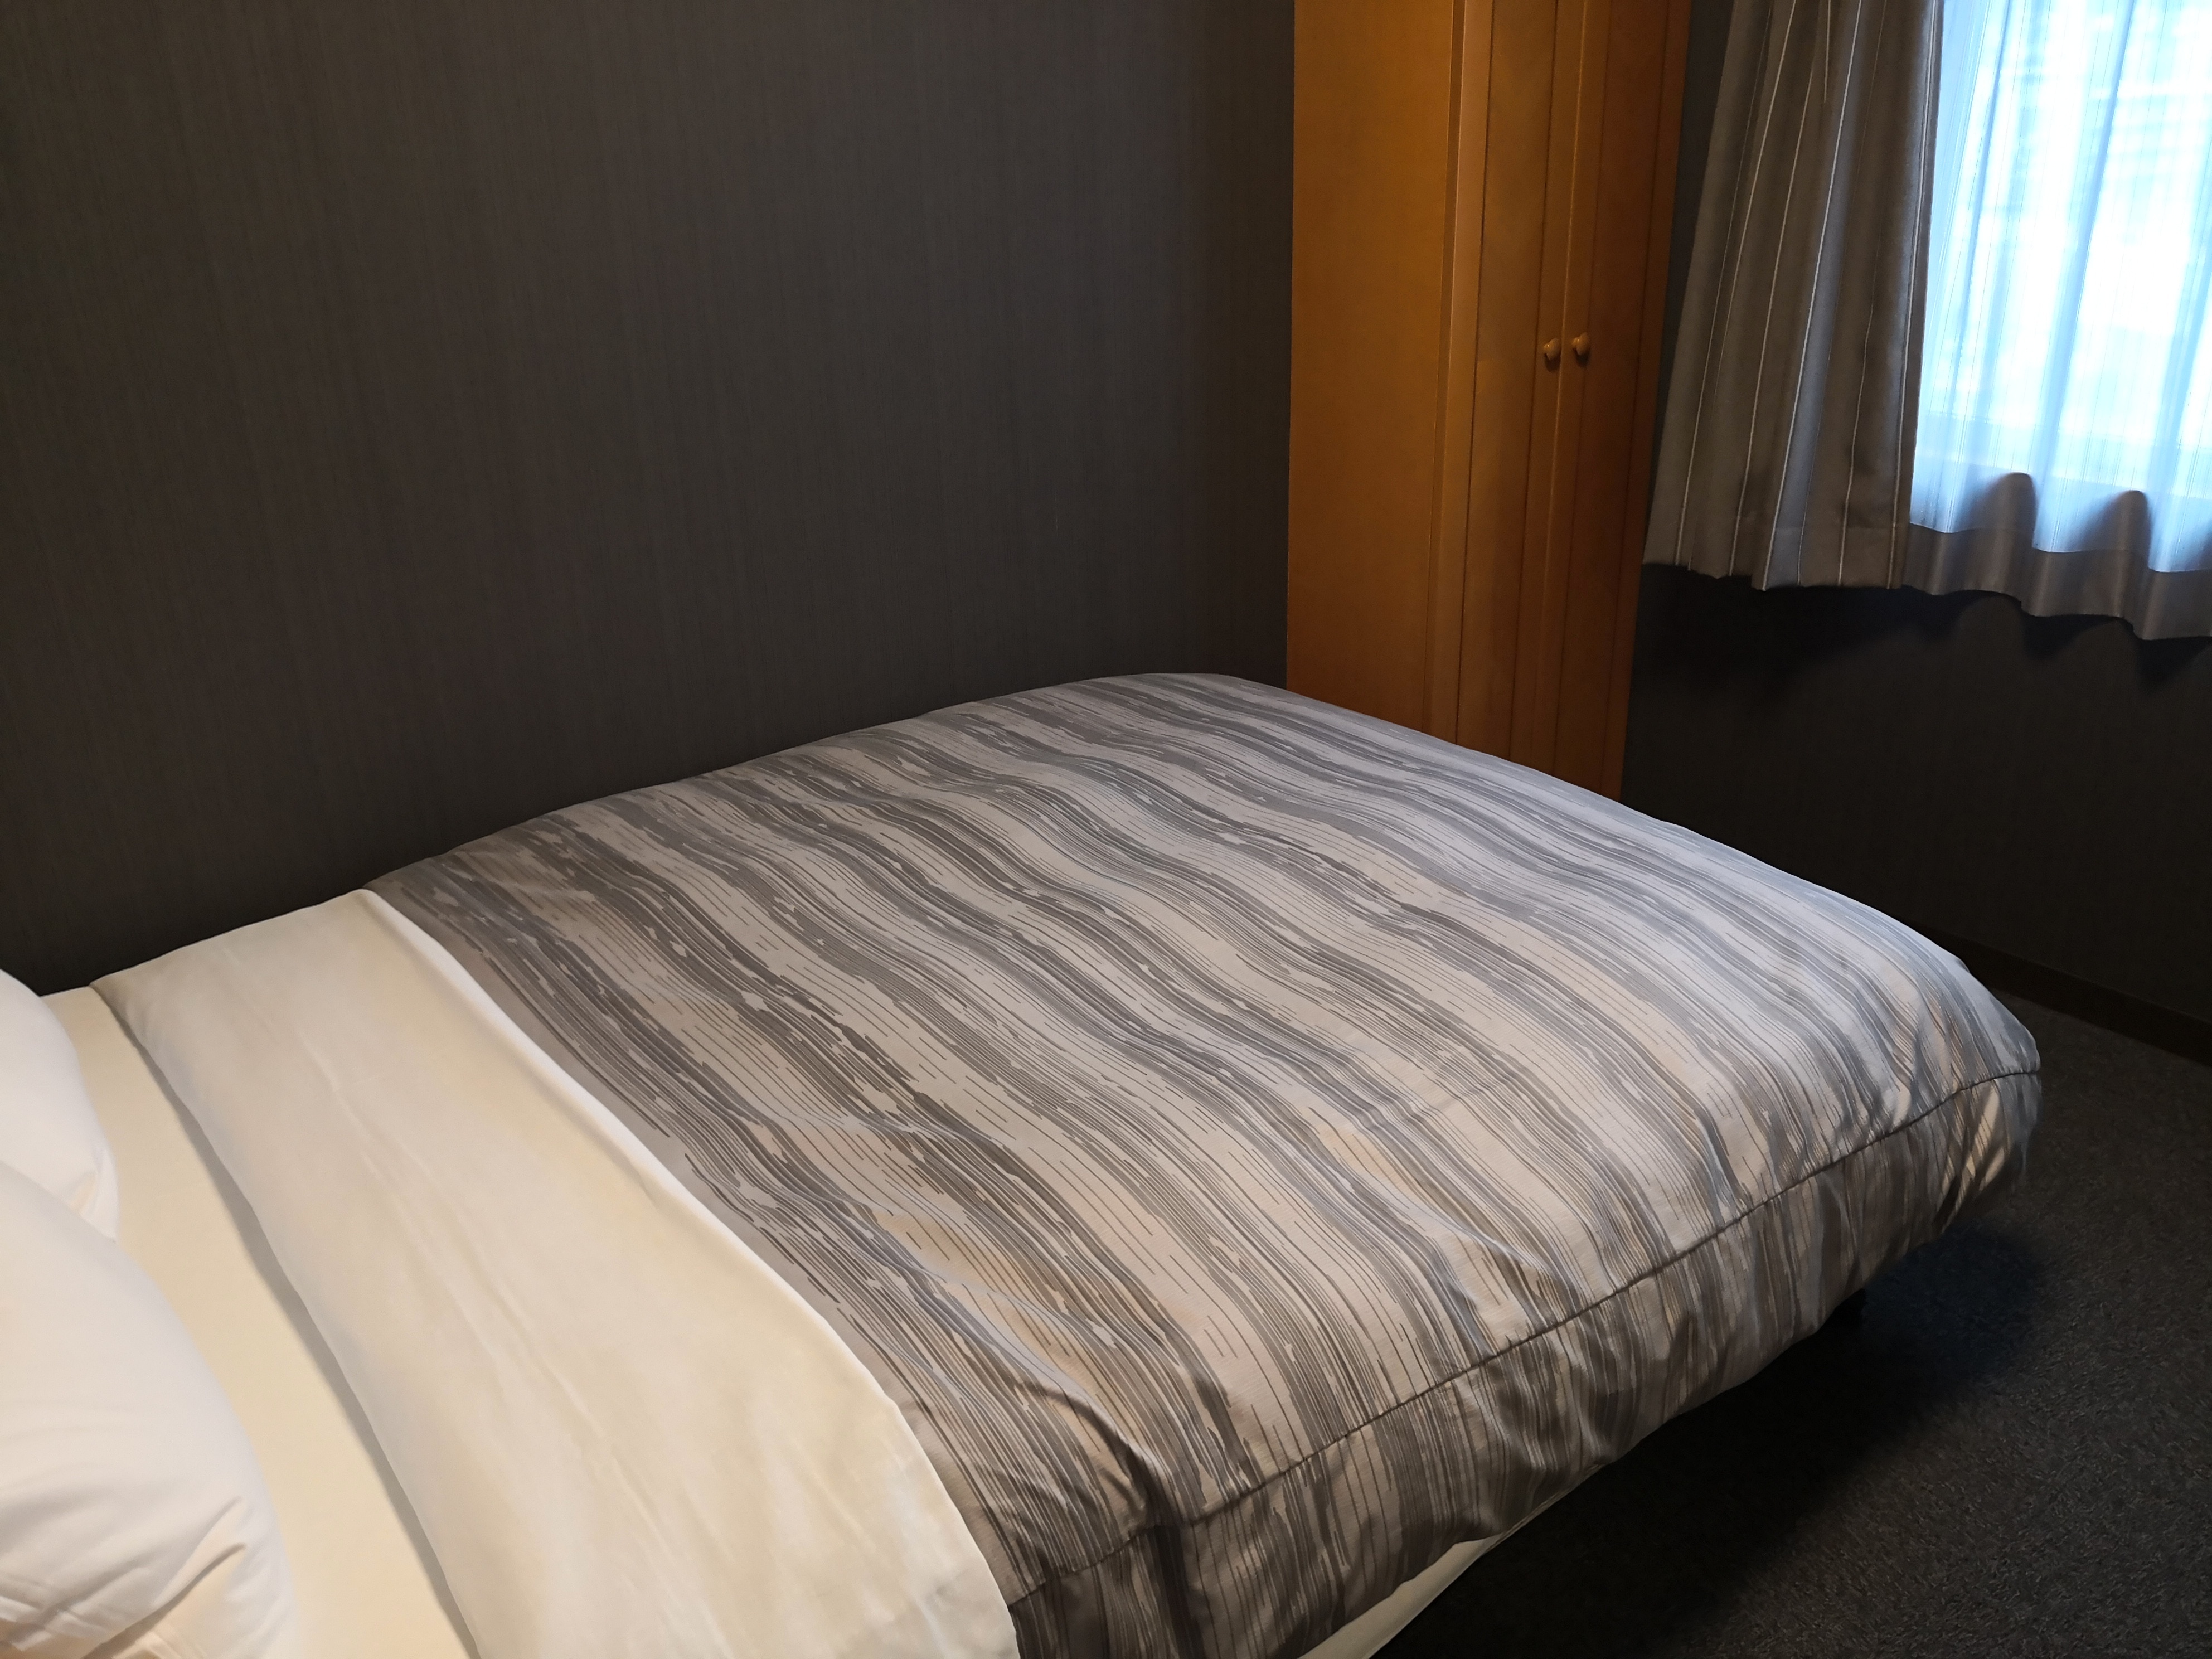 Kamar semi-double Pembaruan selesai pada Agustus 2019 tempat tidur luas dengan lebar 140 cm dan Wi-Fi gratis